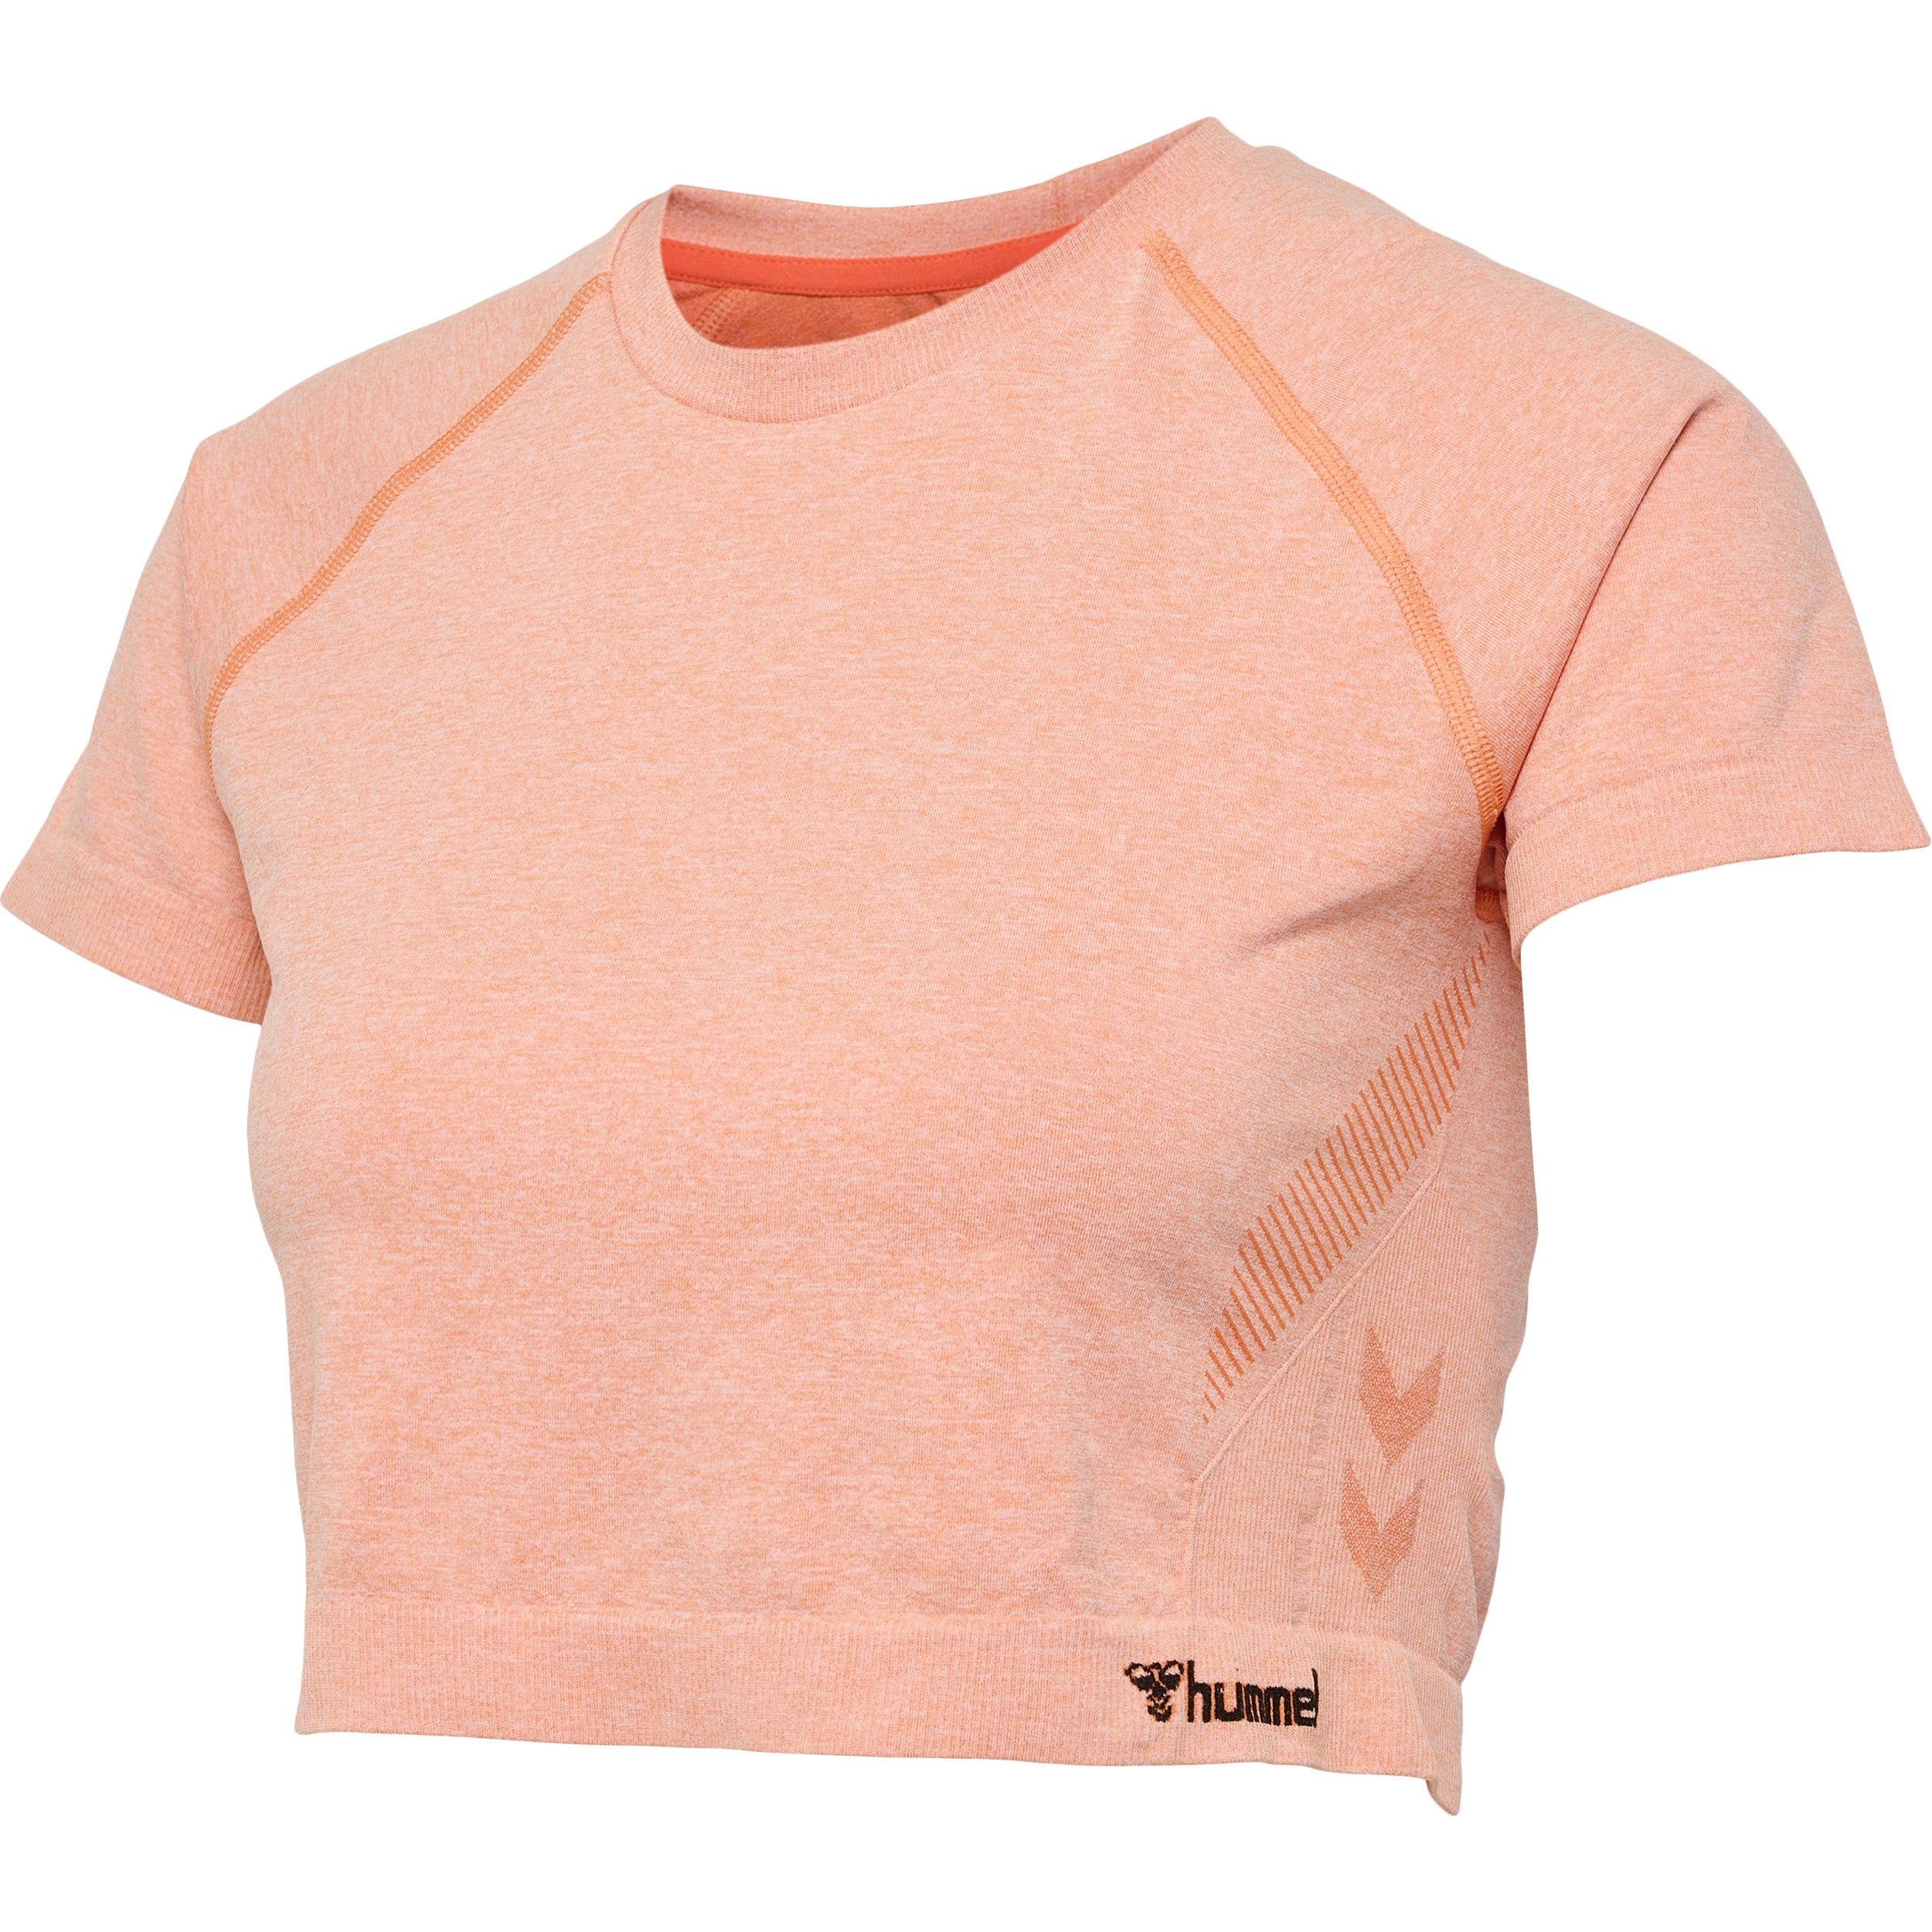 Brug Hummel CI Seamless Cropped T-shirt - Canyon Sunset Melange til en forbedret oplevelse